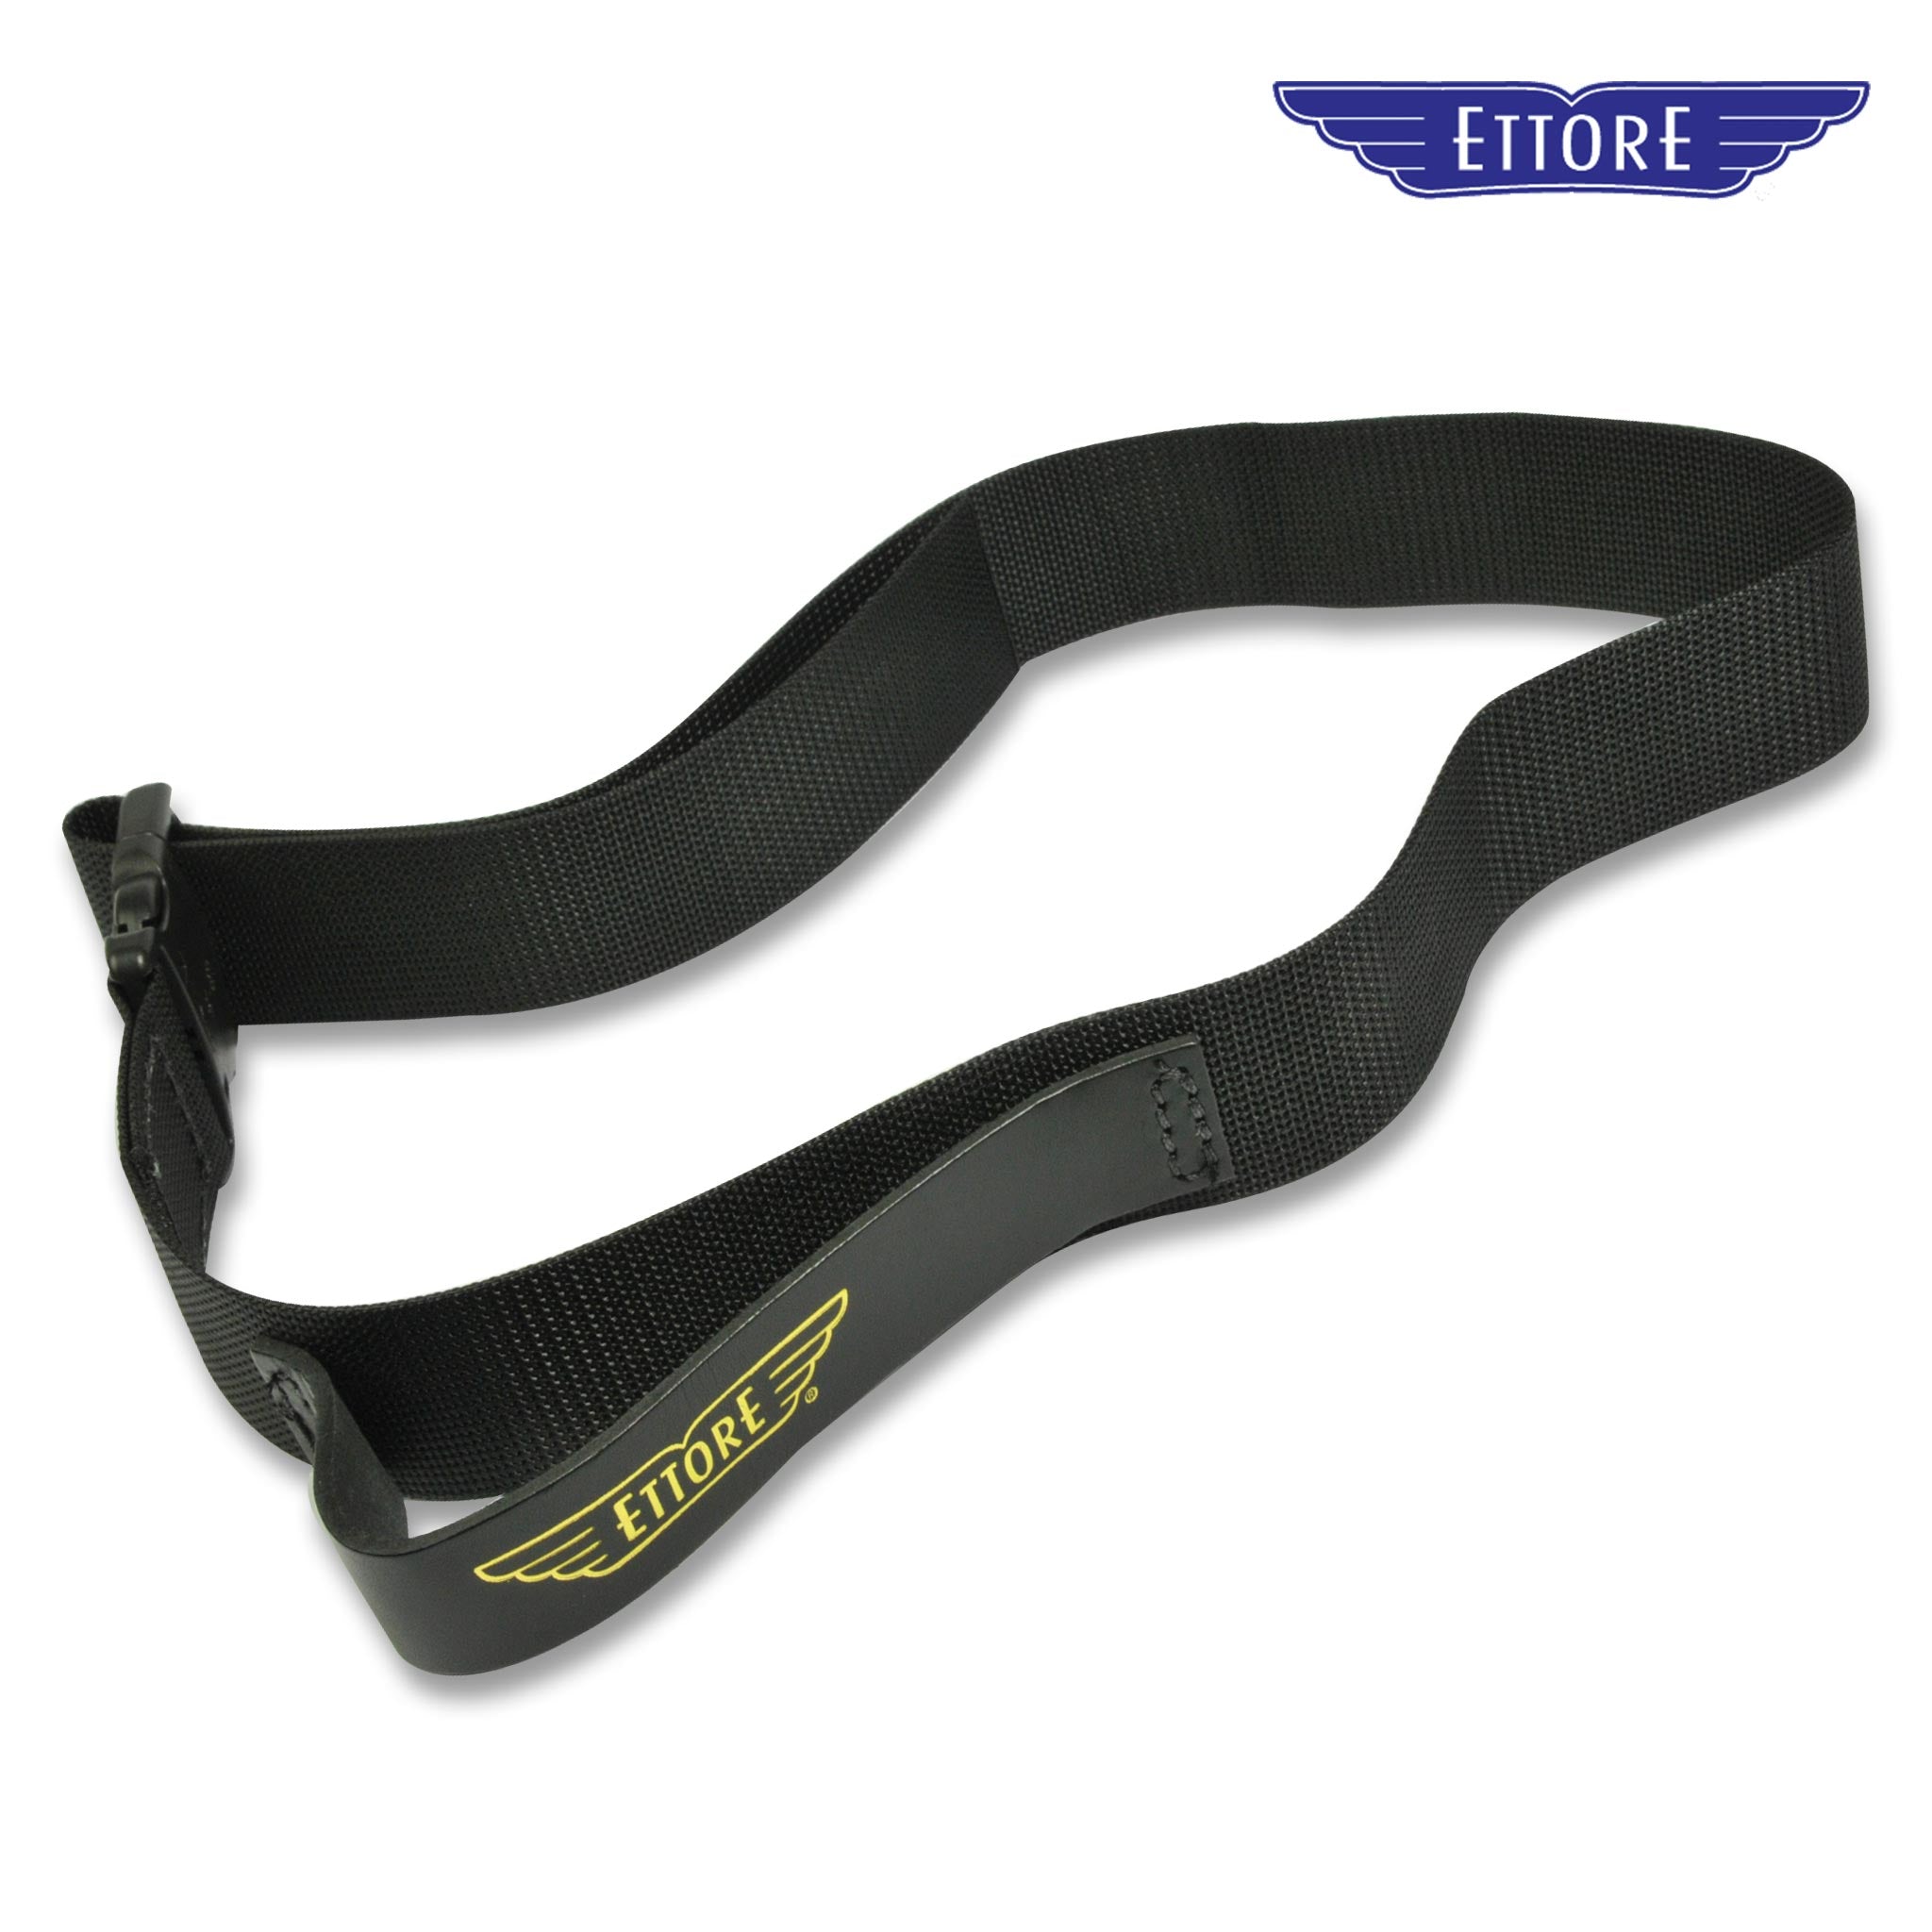 Ettore Single Loop Tool Belt